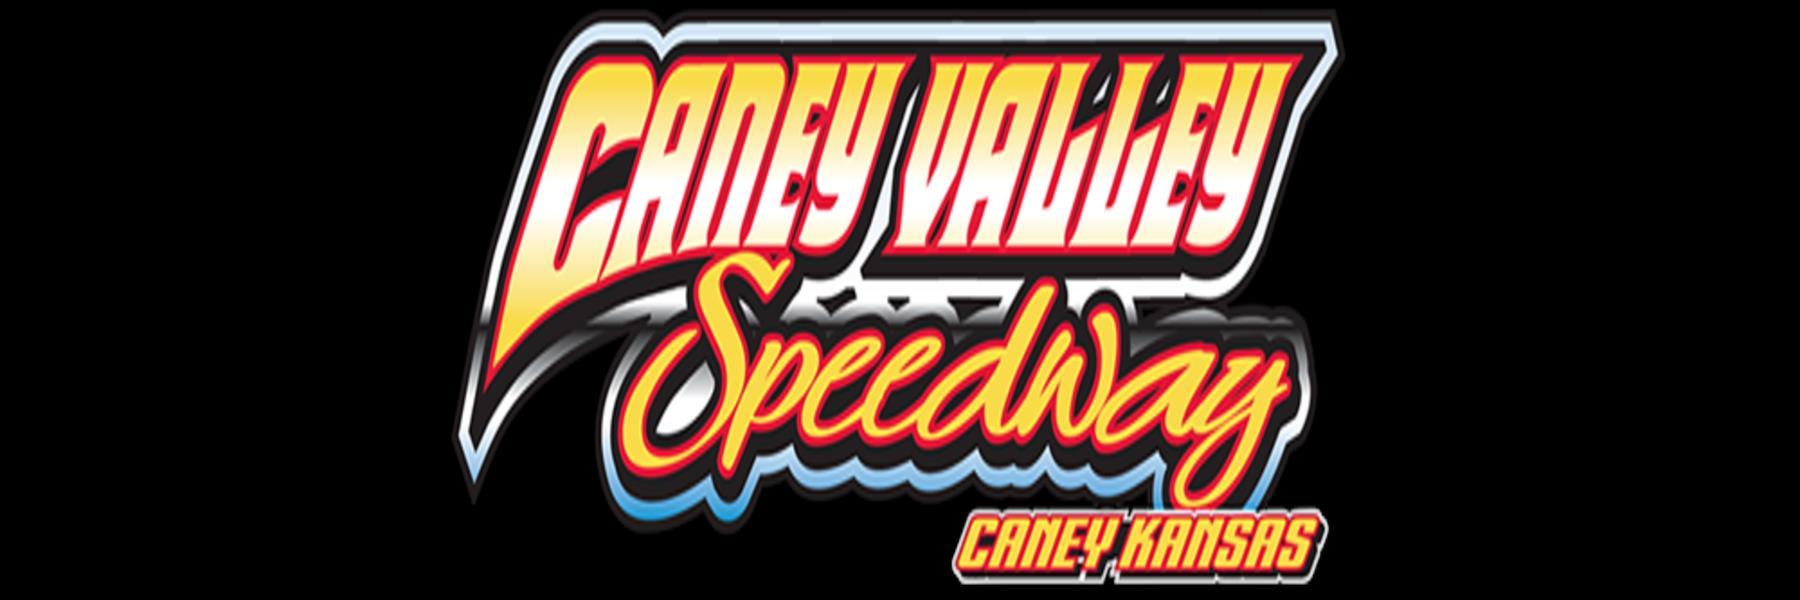 9/10/2022 - Caney Valley Speedway